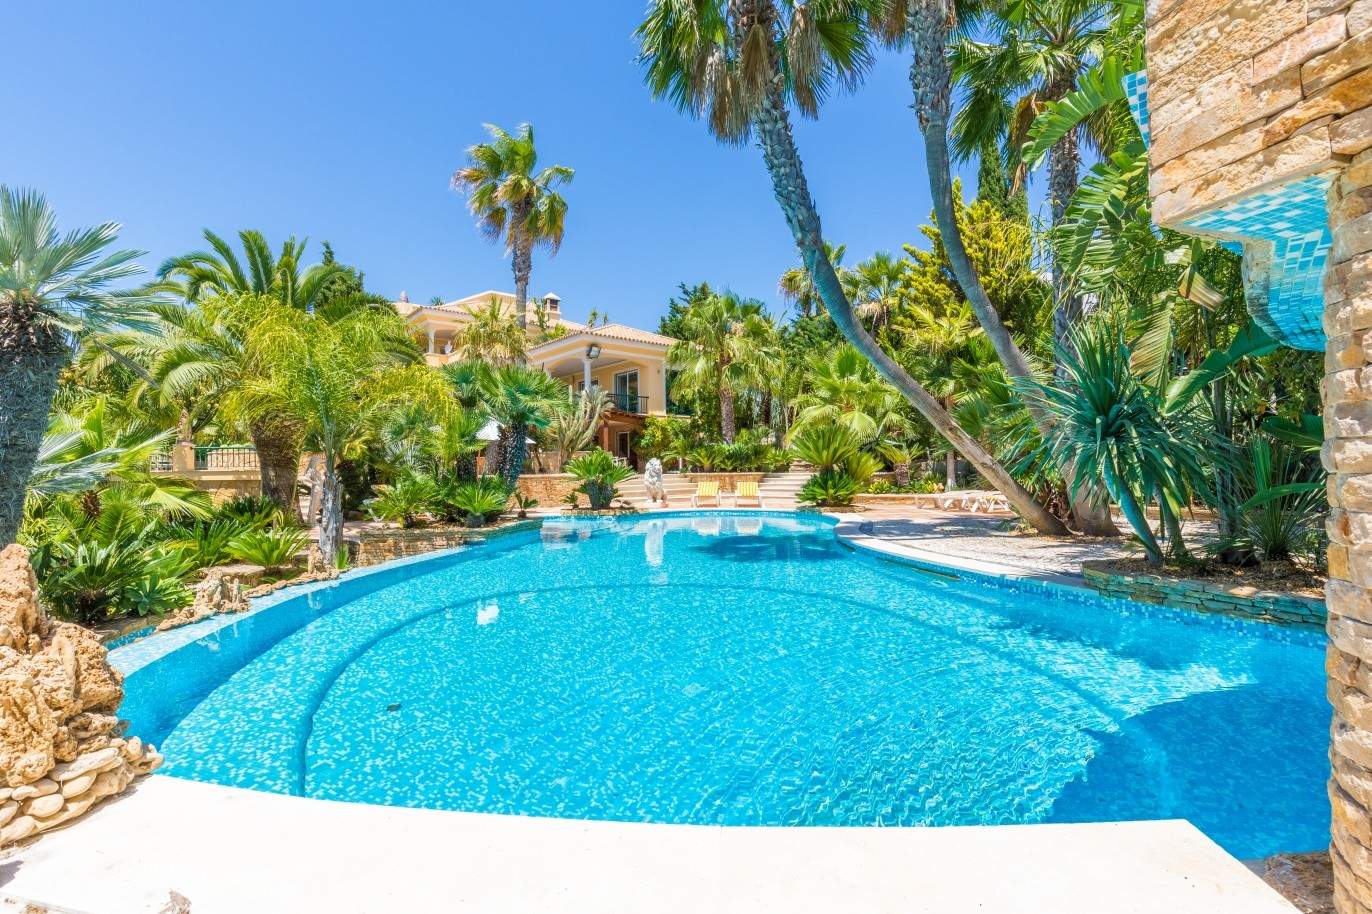 Piso en venta, piscina y pista de tenis, Albufeira, Algarve, Portugal_59654